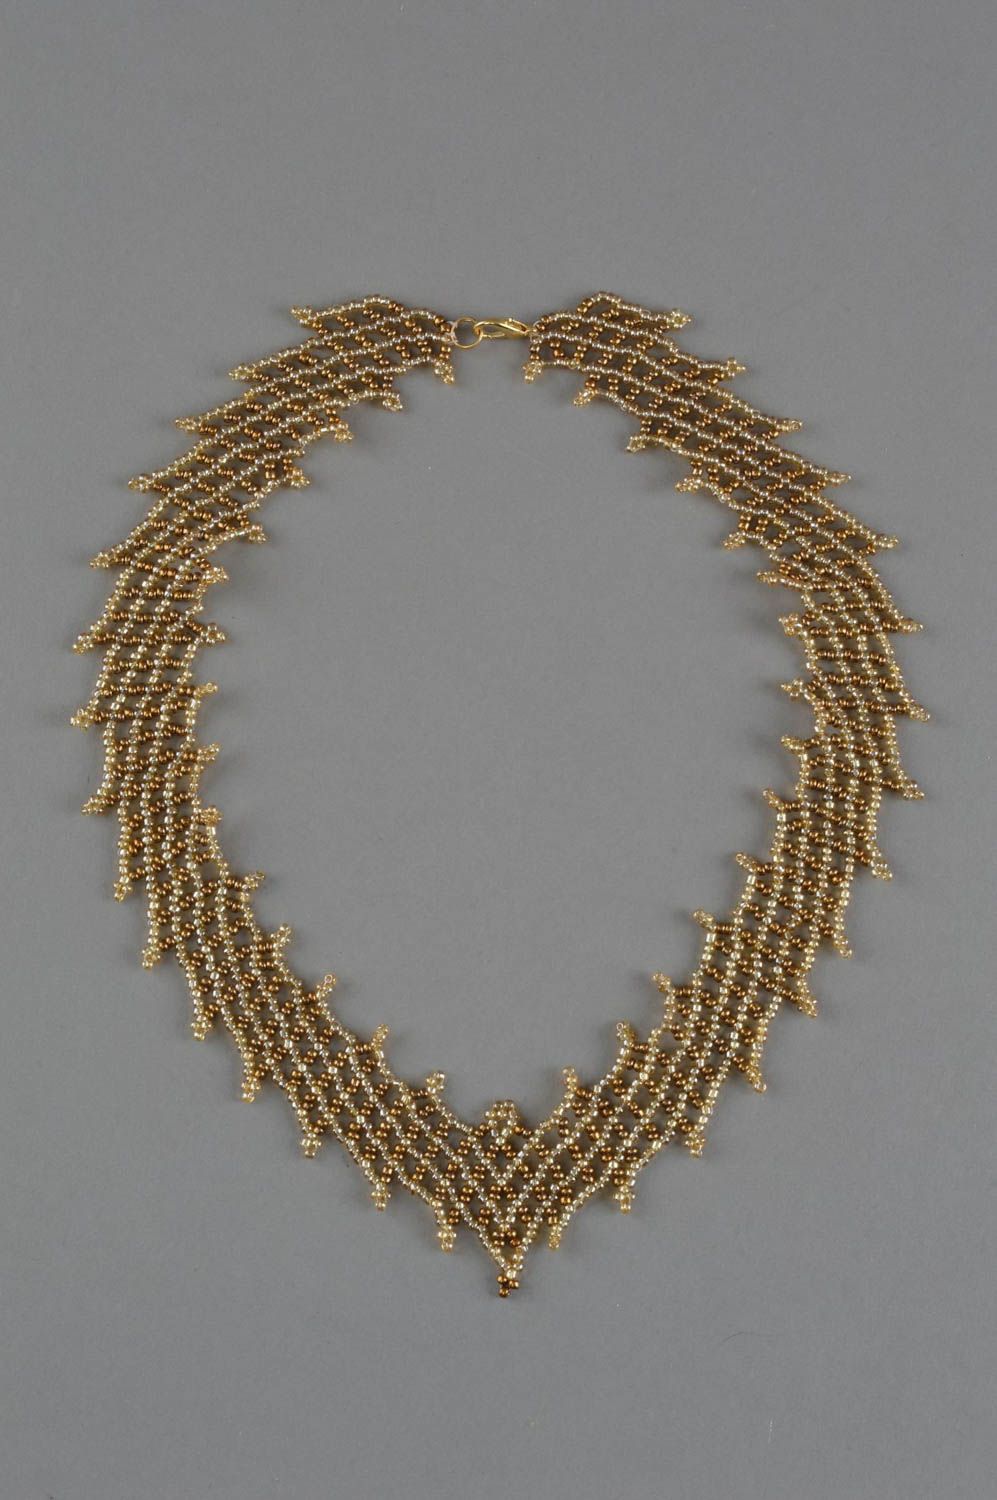 Ожерелье из бисера плетеное ручной работы оригинальное золотистое красивое фото 2